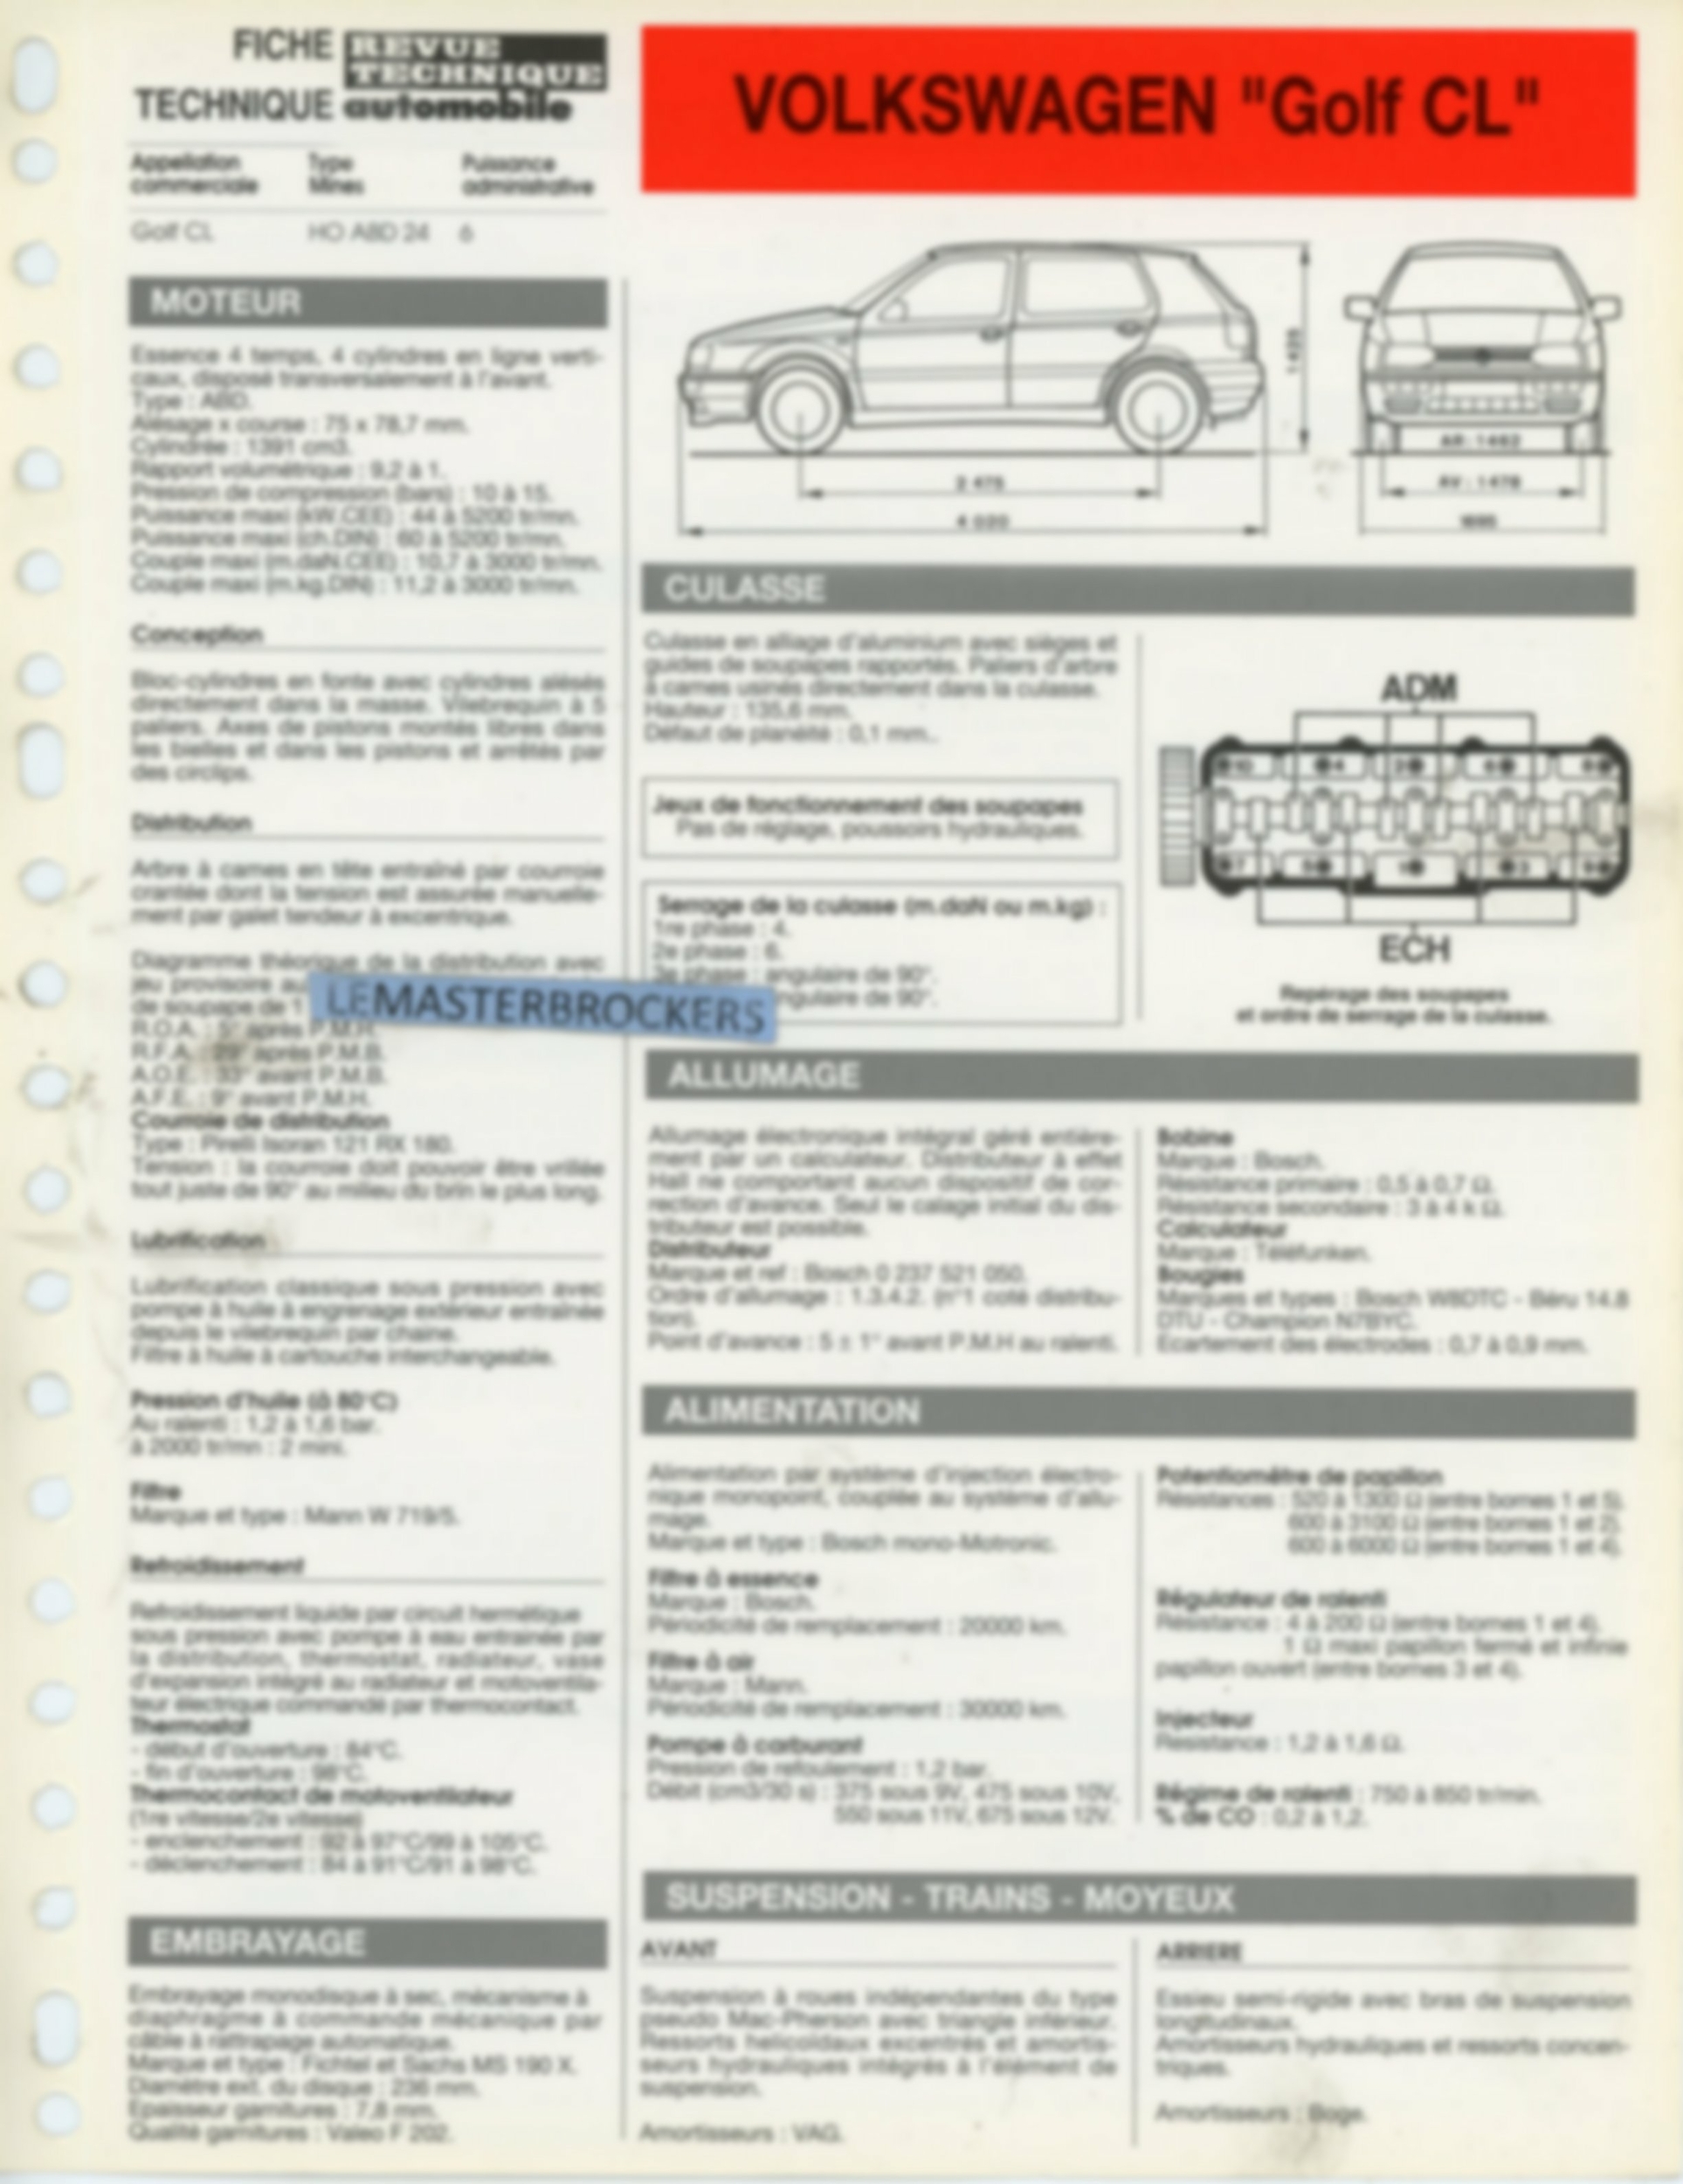 FICHE-TECHNIQUE-VW-GOLF-CL-1992-FICHE-RTA-LEMASTERBROCKERS